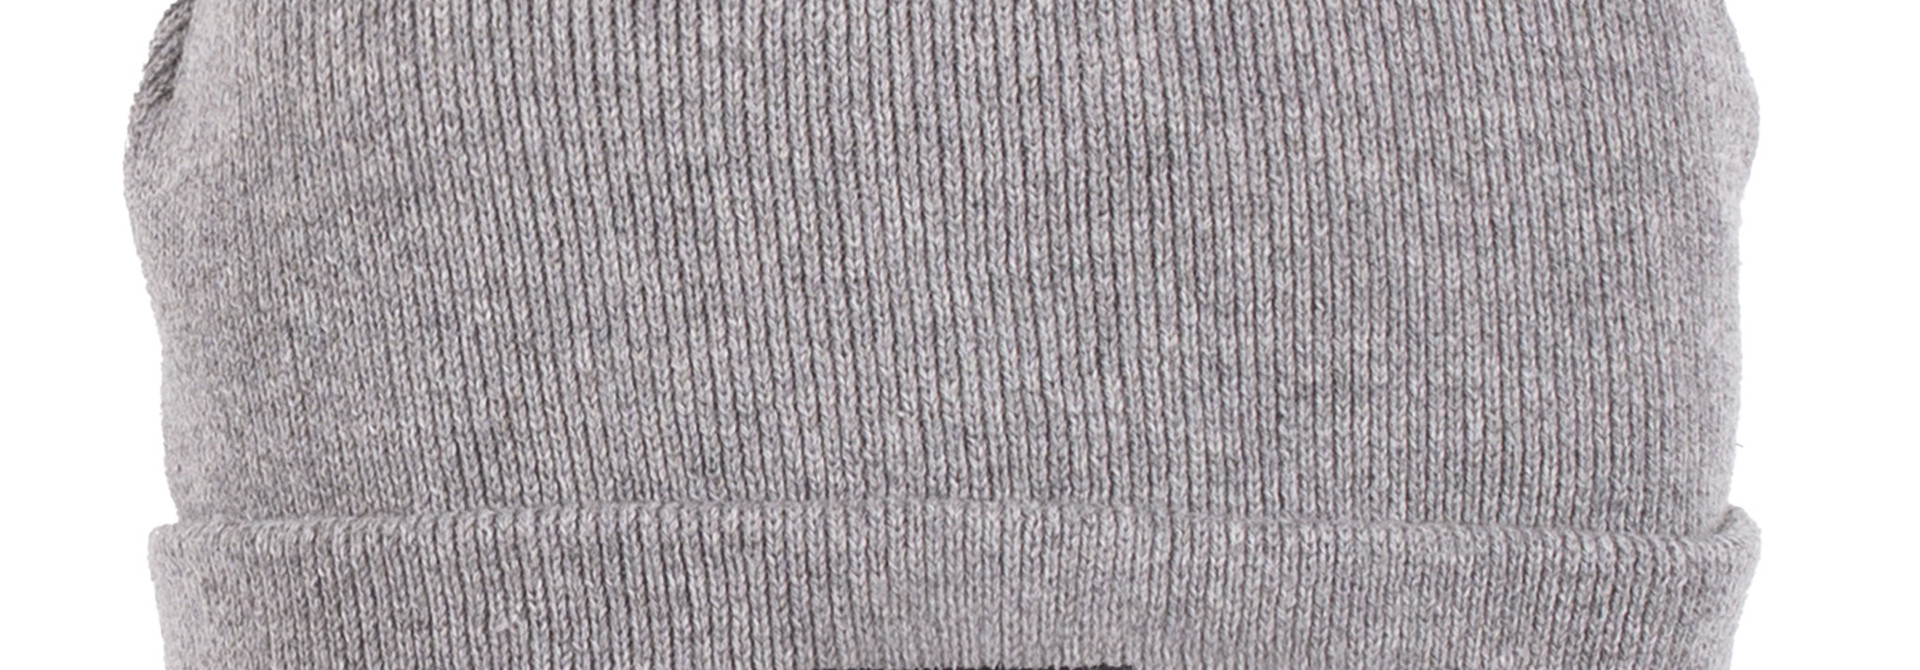 Tuque en tricot - F22 Gris